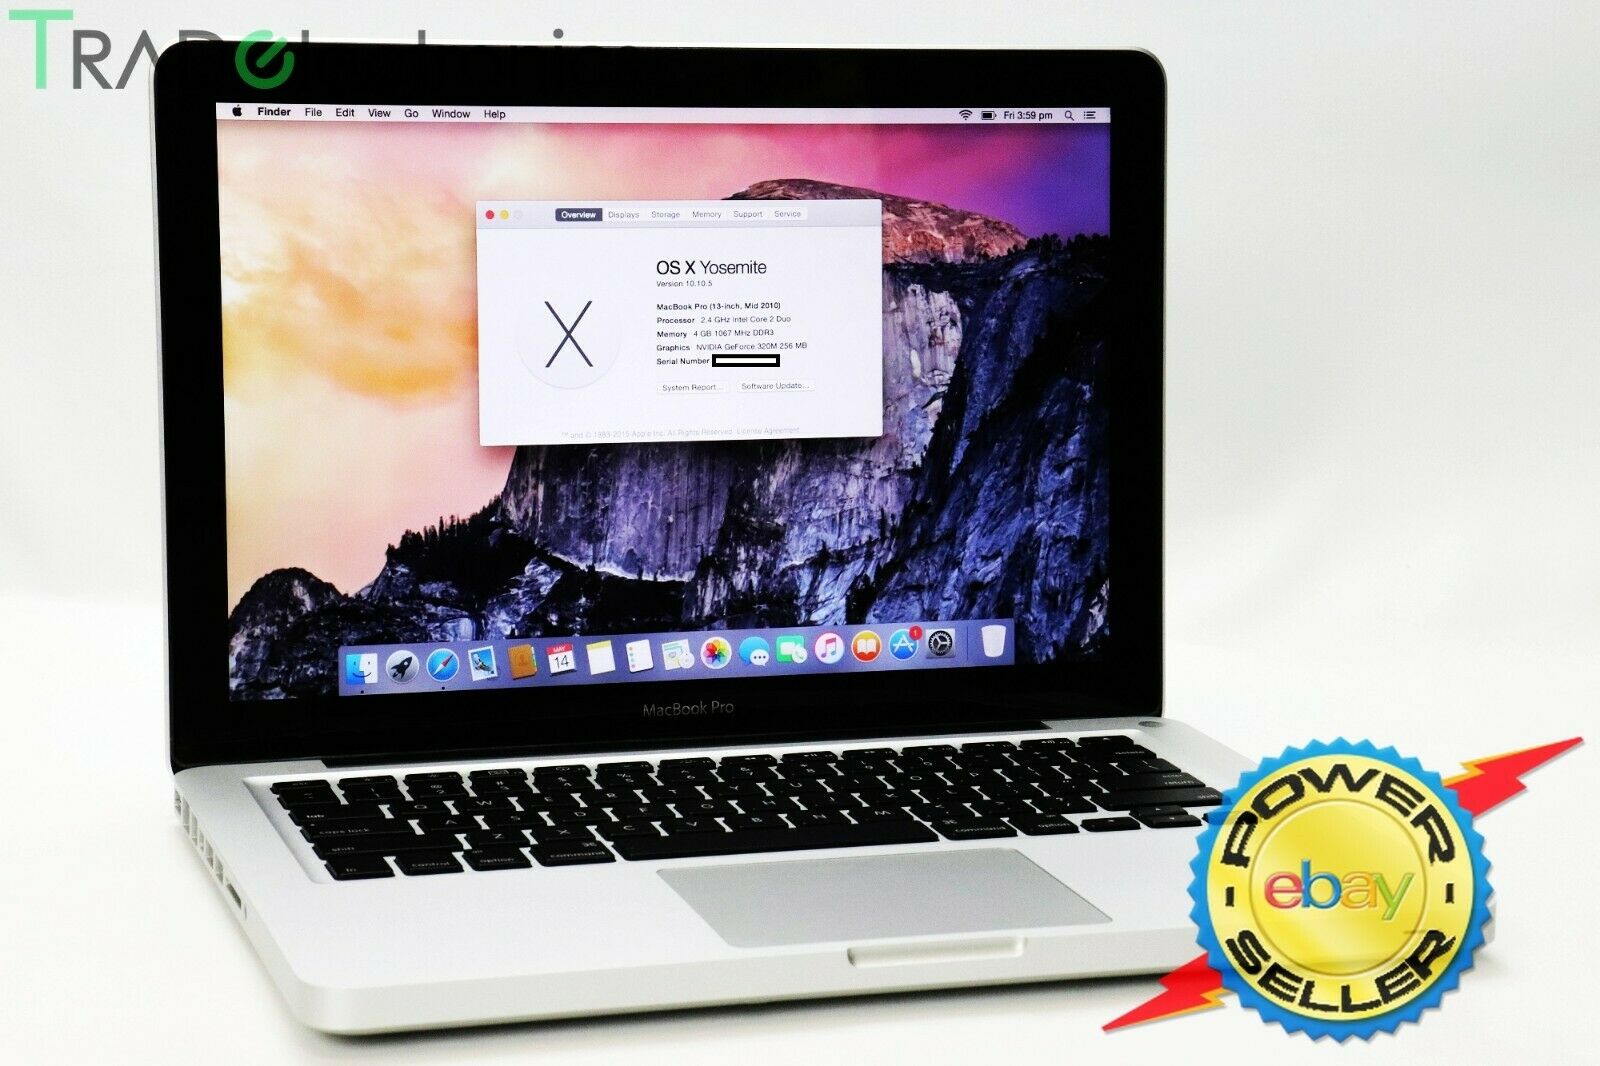 2010 Apple Macbook Pro 13